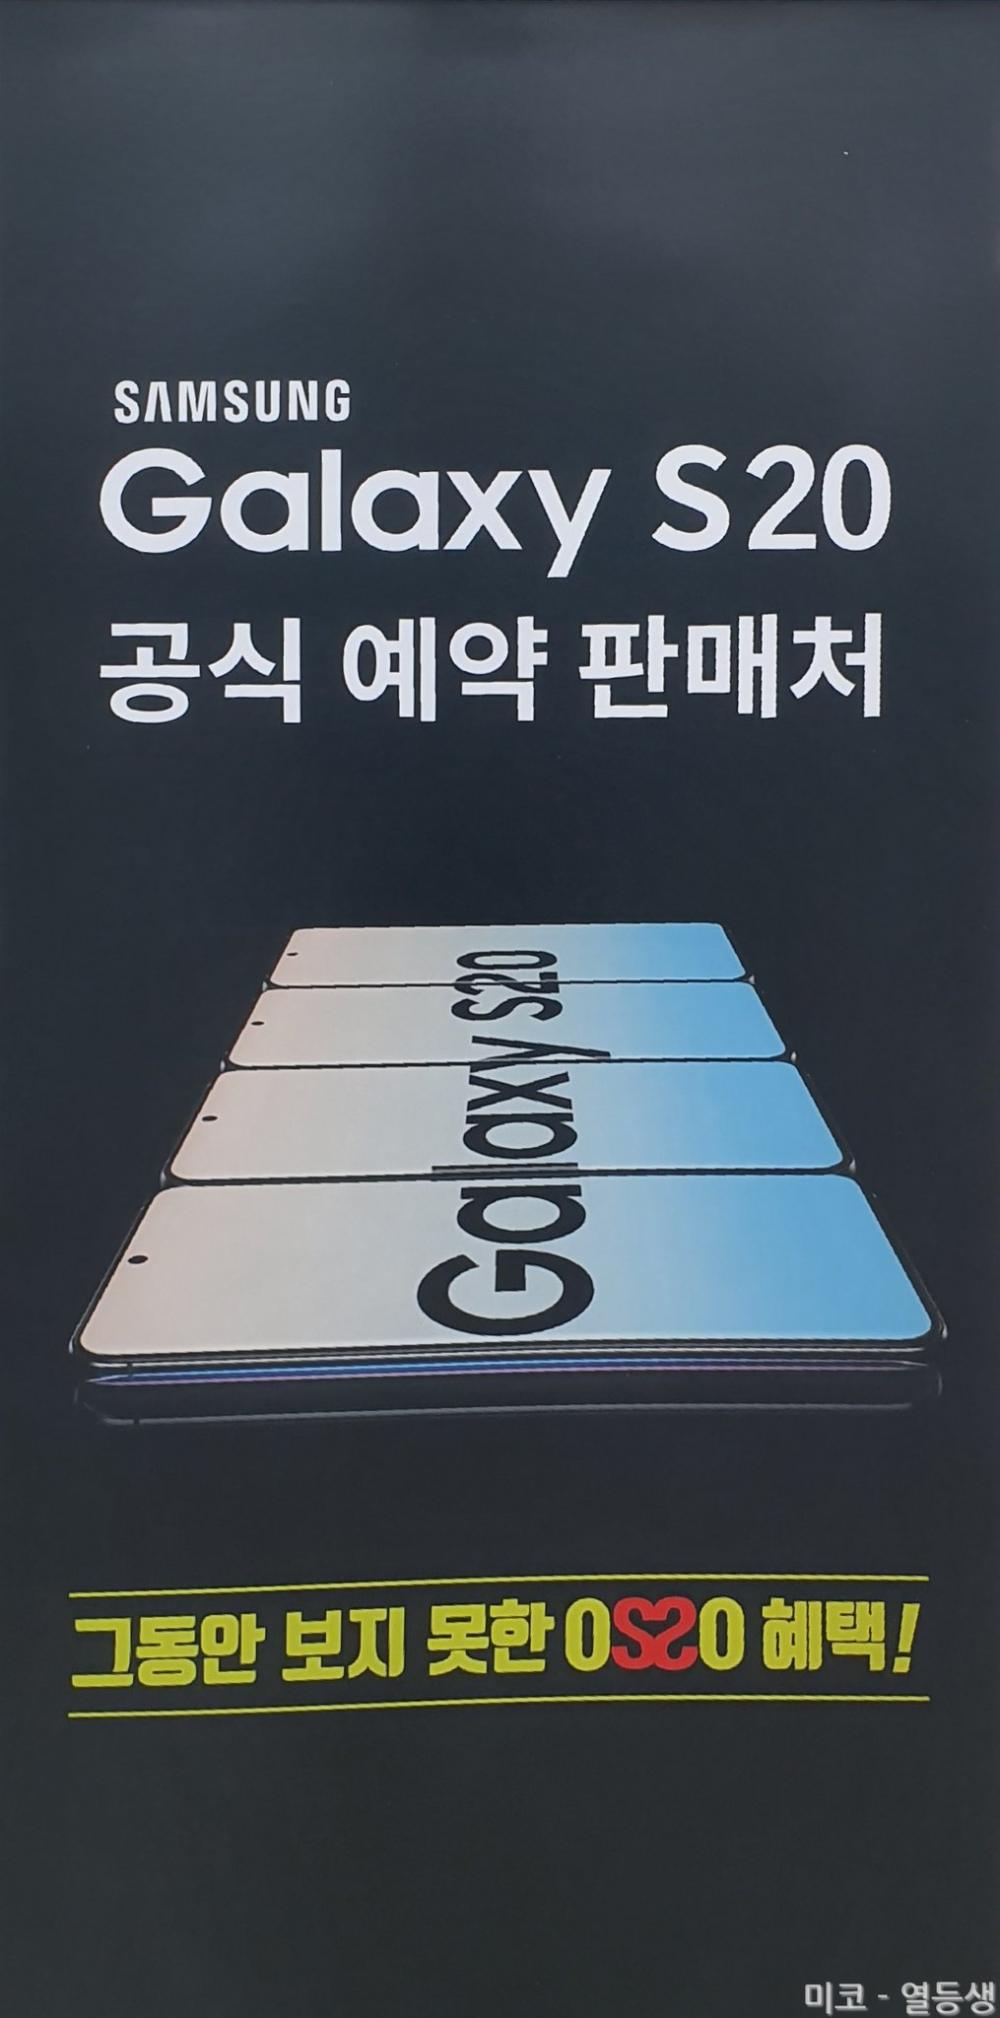 Samsung Galaxy S20: Μαζικό leak αποκαλύπτει ονόματα, εκδόσεις και